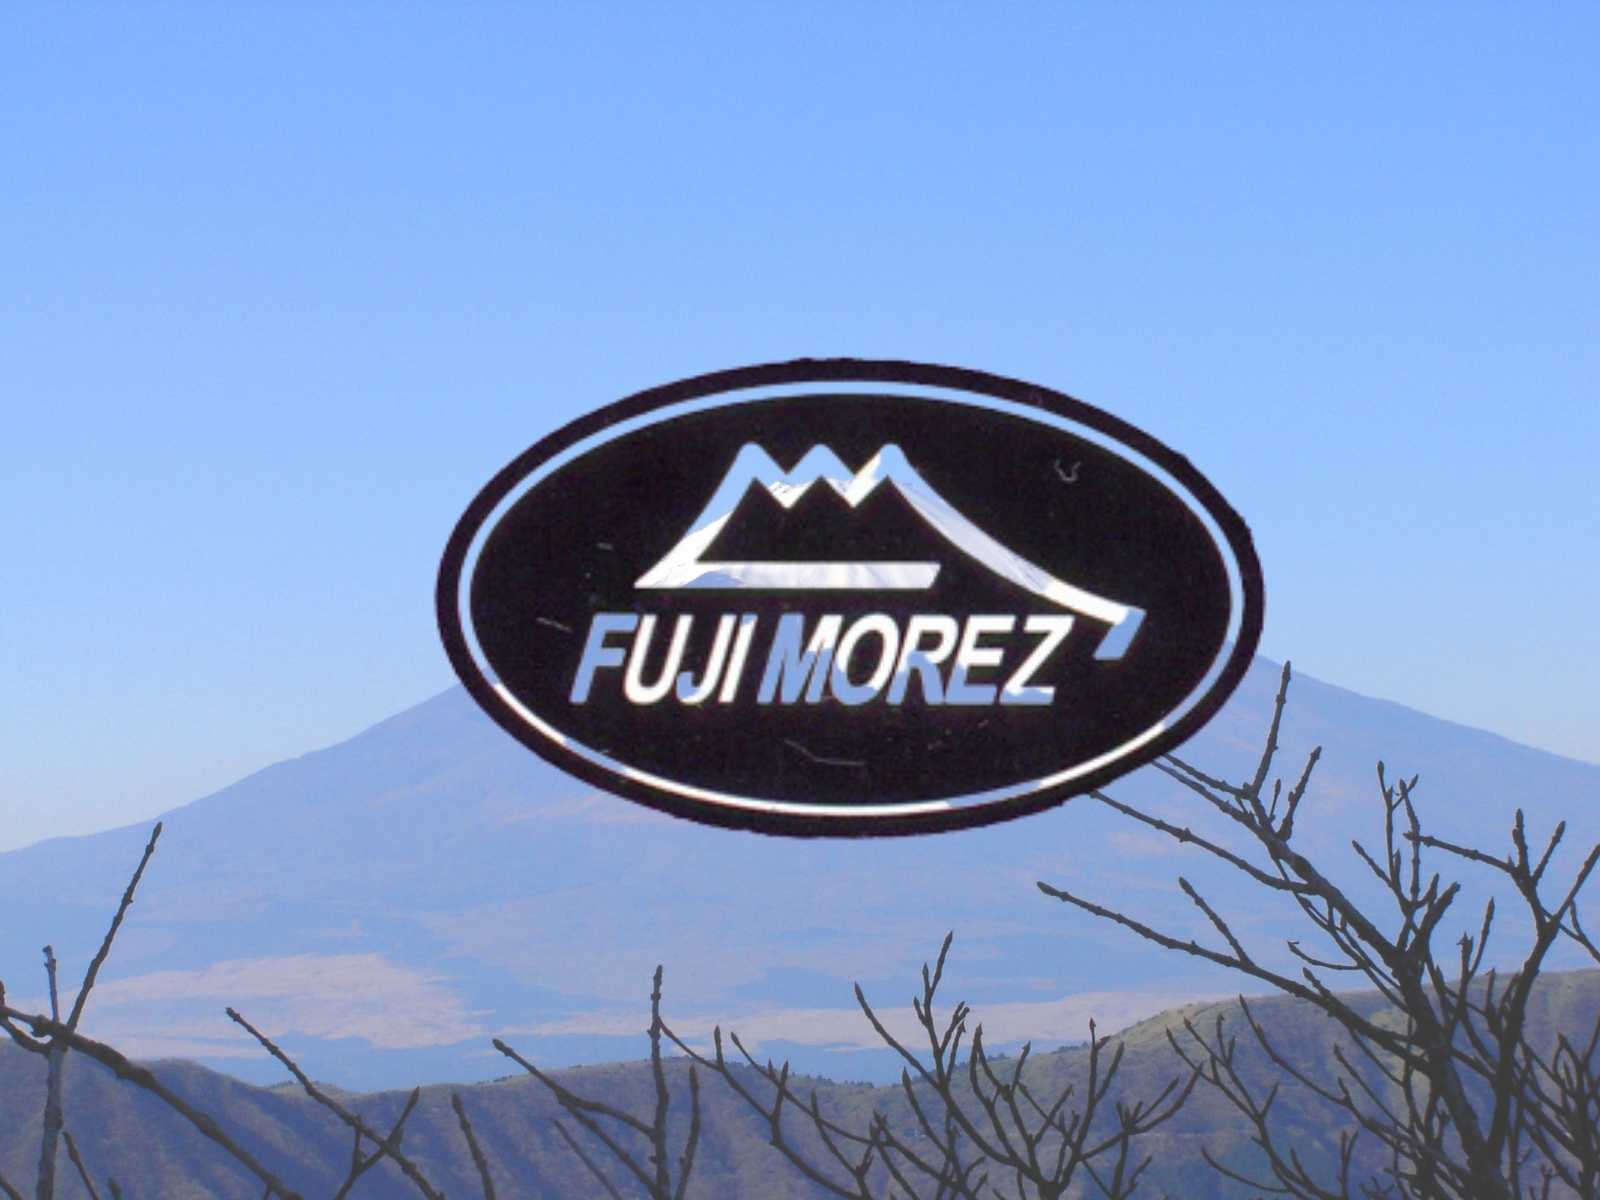 Fuji MoreZ - Japan Scissor Brand in Canada